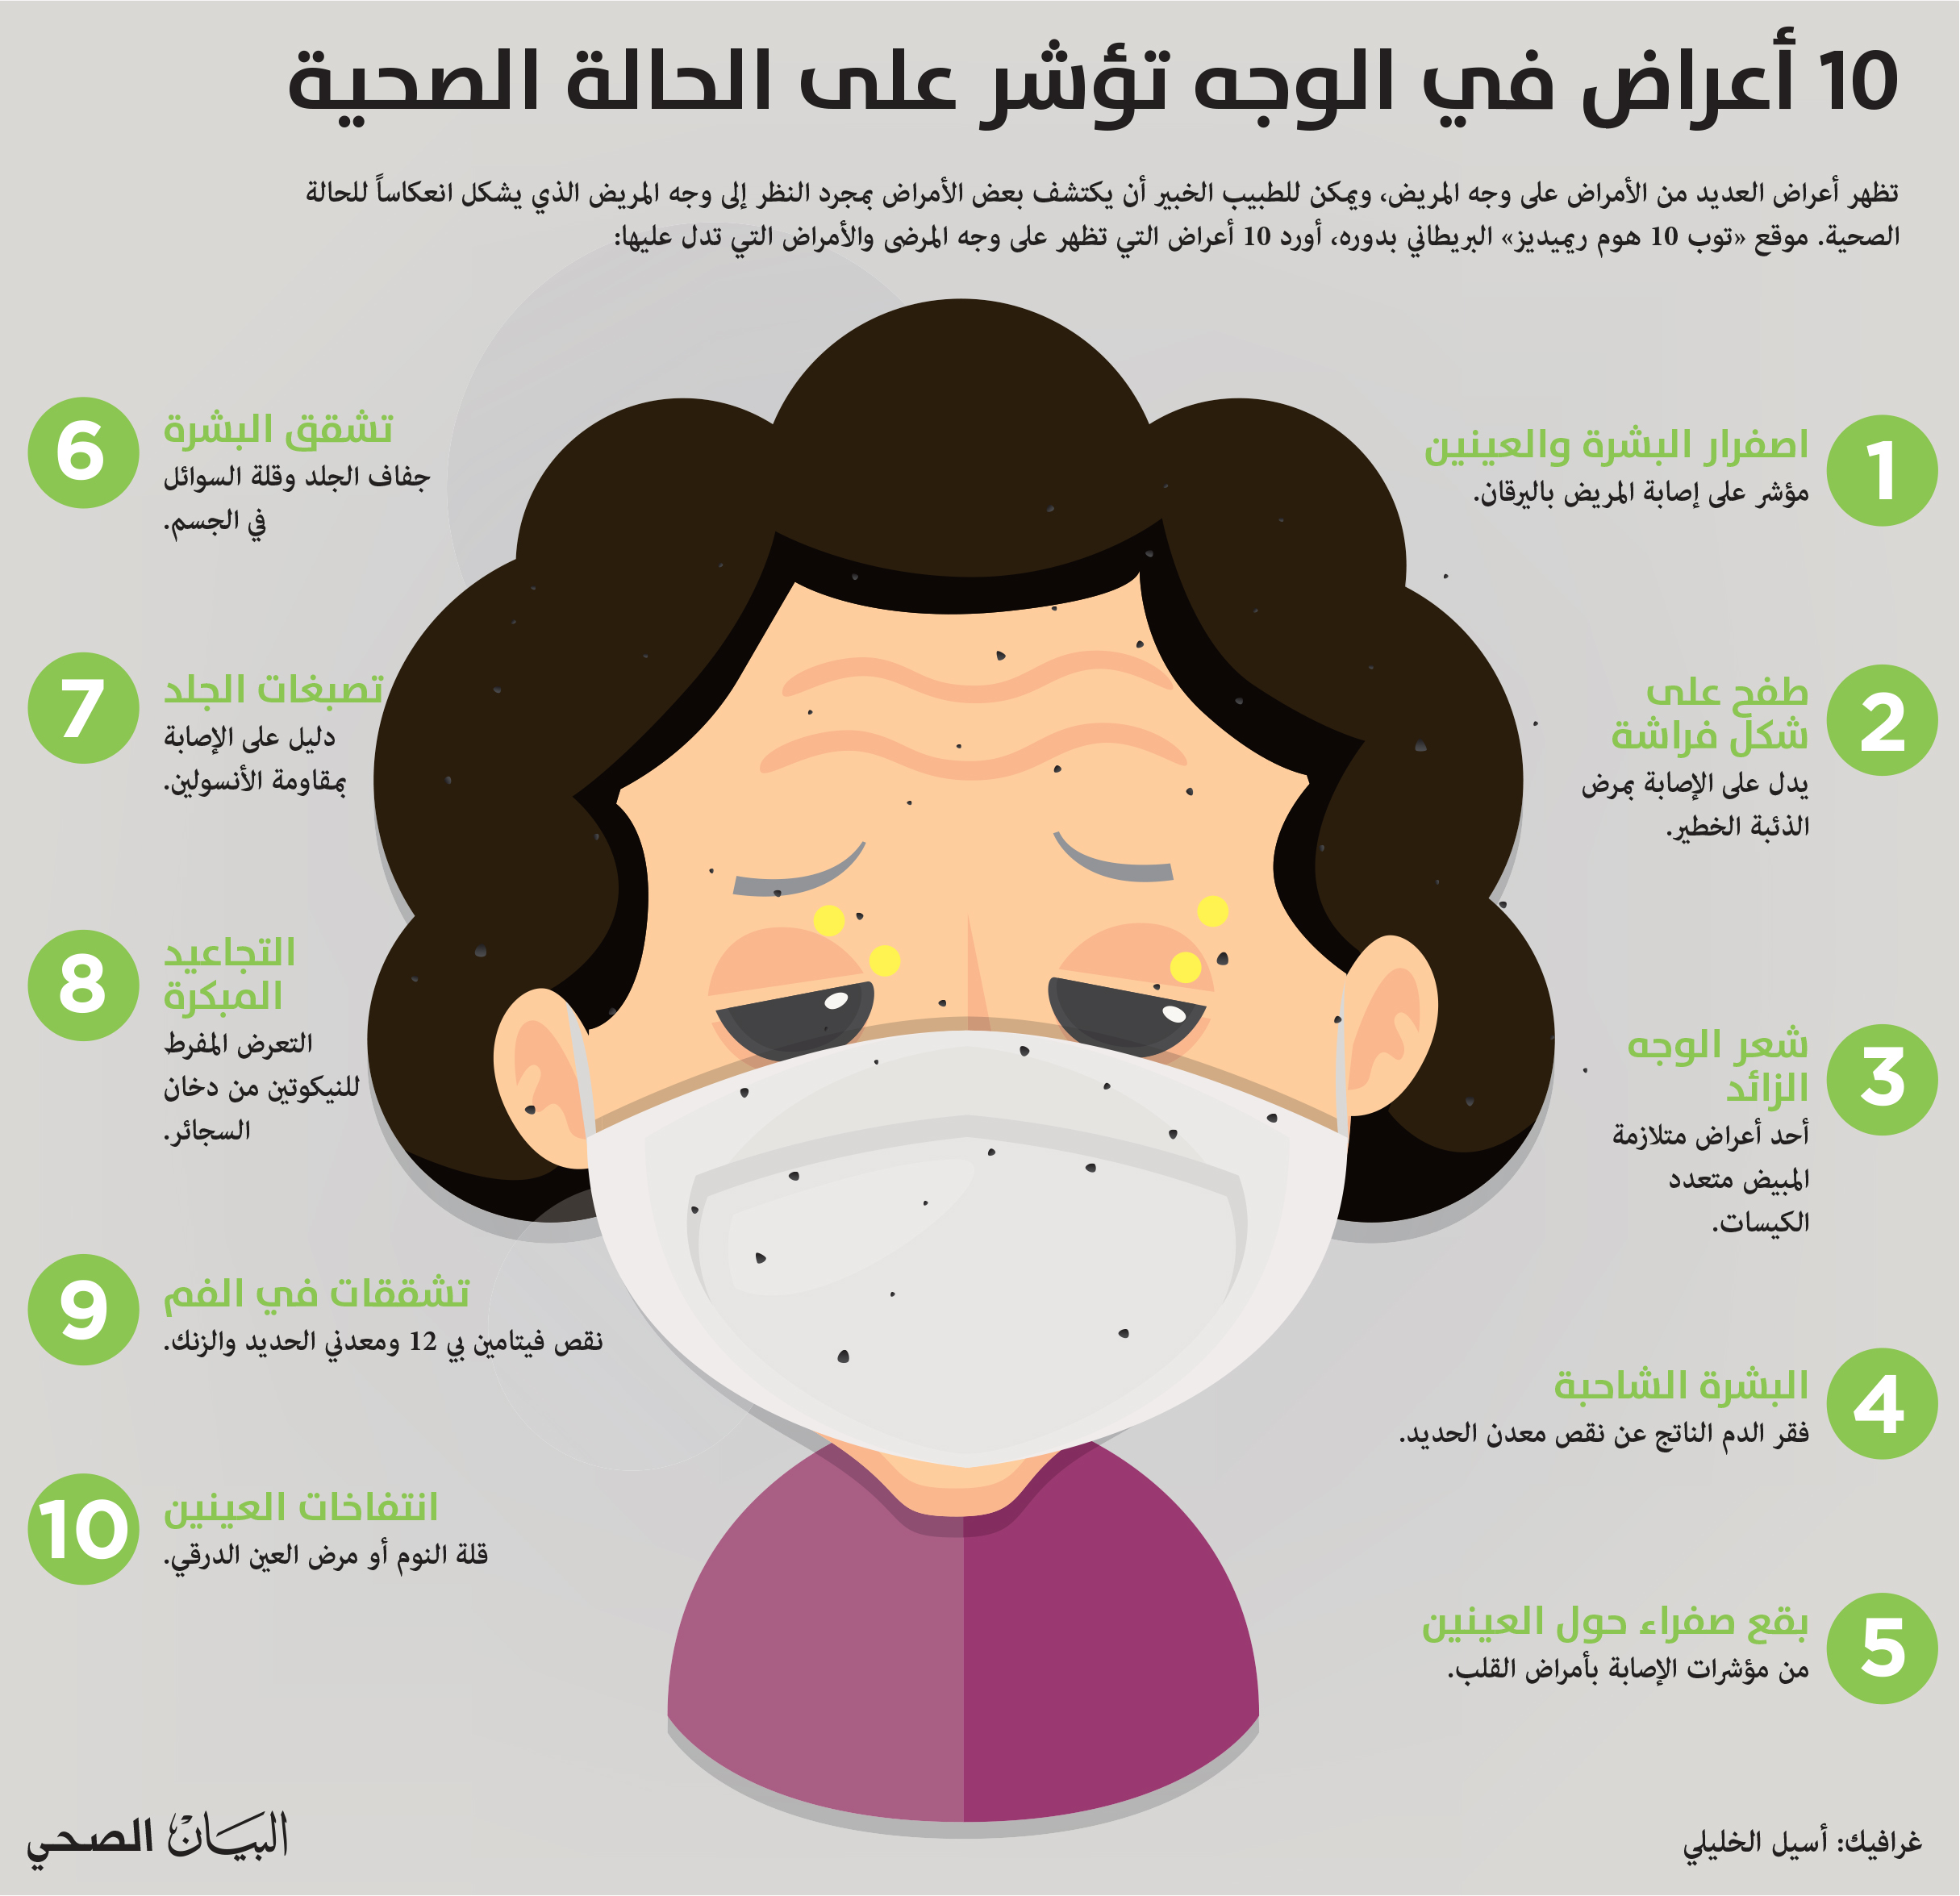 10 أعراض في الوجه تؤشر على الحالة الصحية - البيان الصحي ...